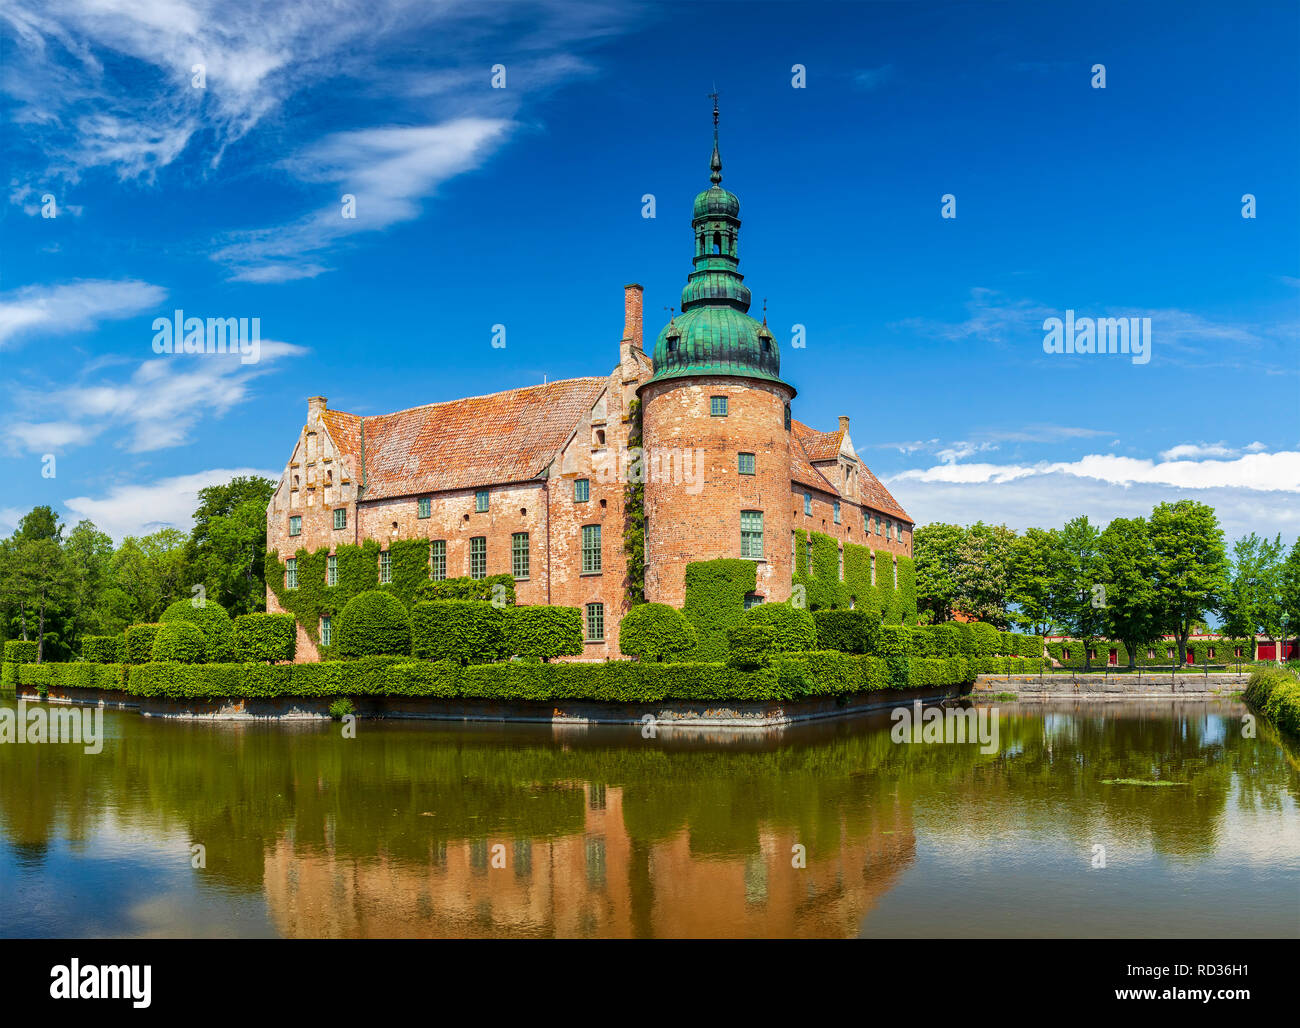 Das historische Schloss von Vittskovle in Süd Schweden. Stockfoto